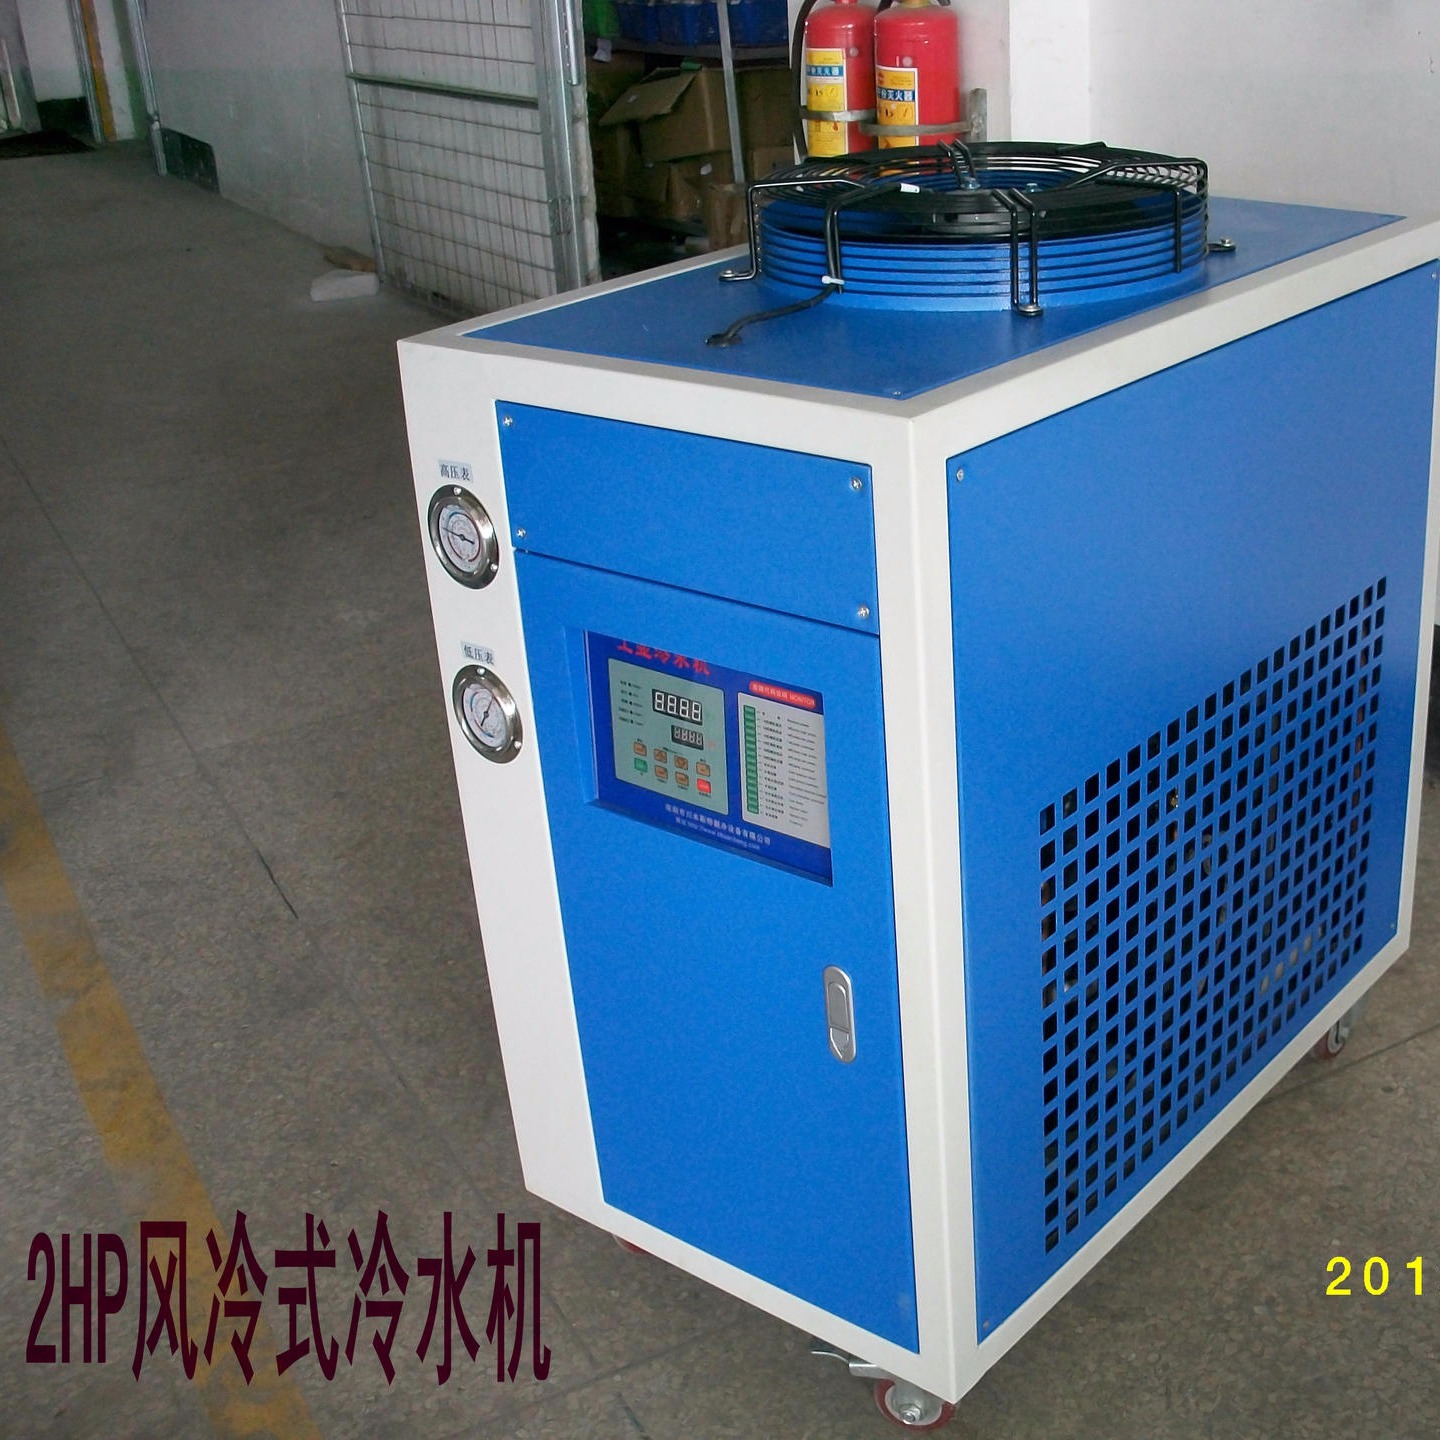 自来水循环降温机  自来水循环降温冷却机 自来水循环制冷机 工业制冷机  宝驰源   BCY-02A